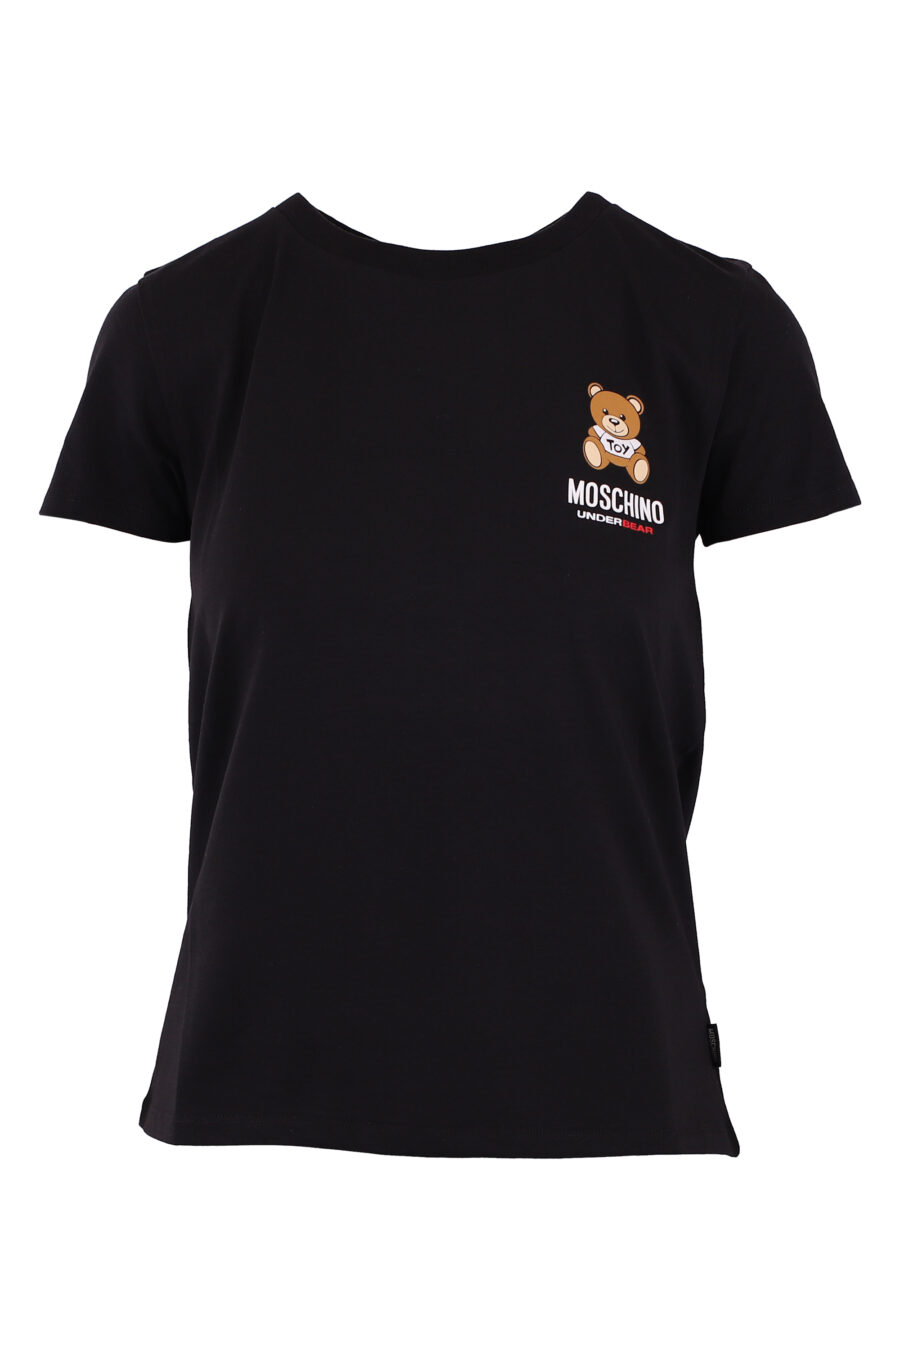 T-shirt preta com o logótipo do urso pequeno - IMG 6202